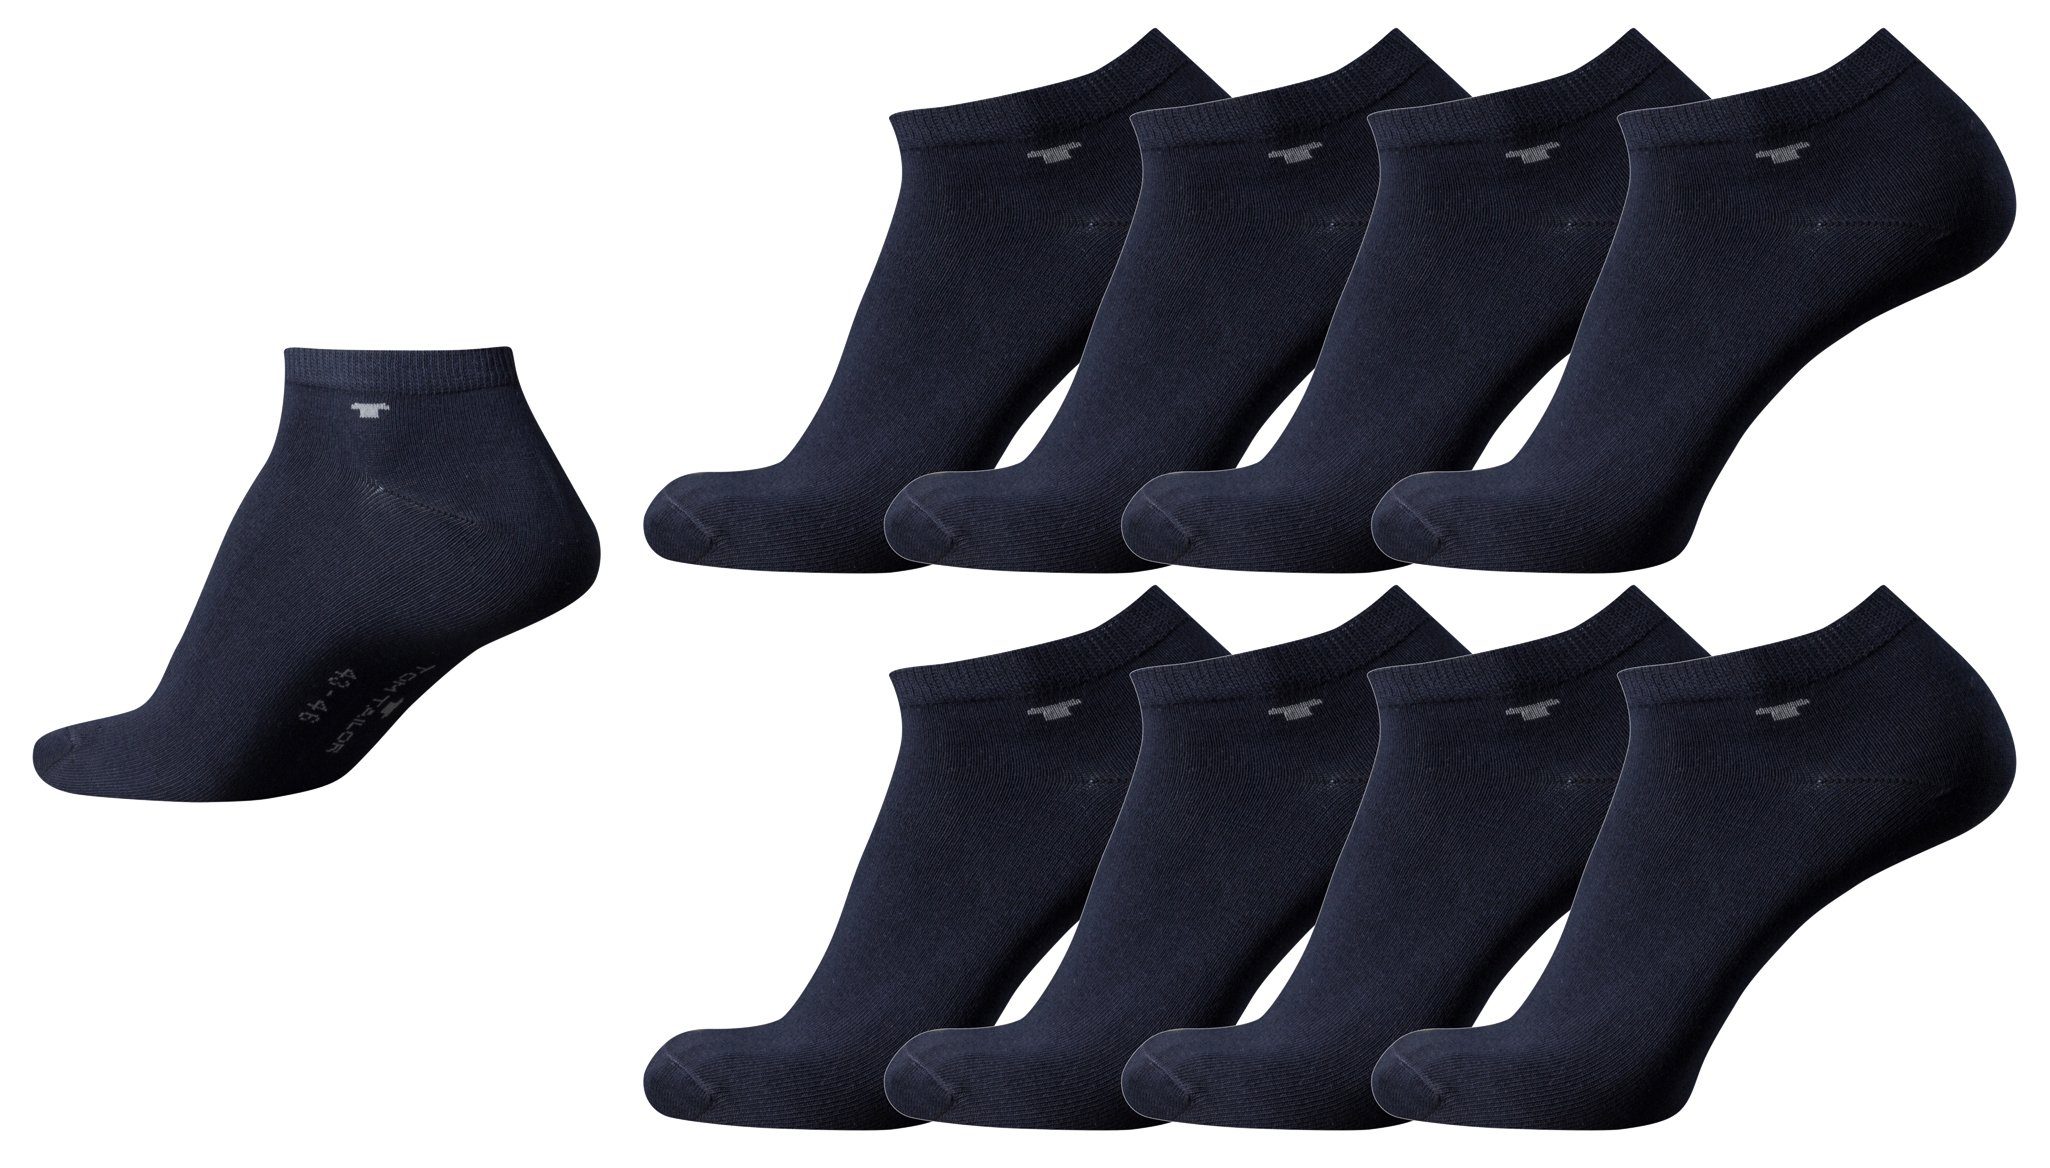 TOM TAILOR Socken TTsneaker545_Set8_46 Tom Tailor 8er Pack Sneaker Socken dunkel-blau Mehrpack Strümpfe Socks dark navy Füsslinge